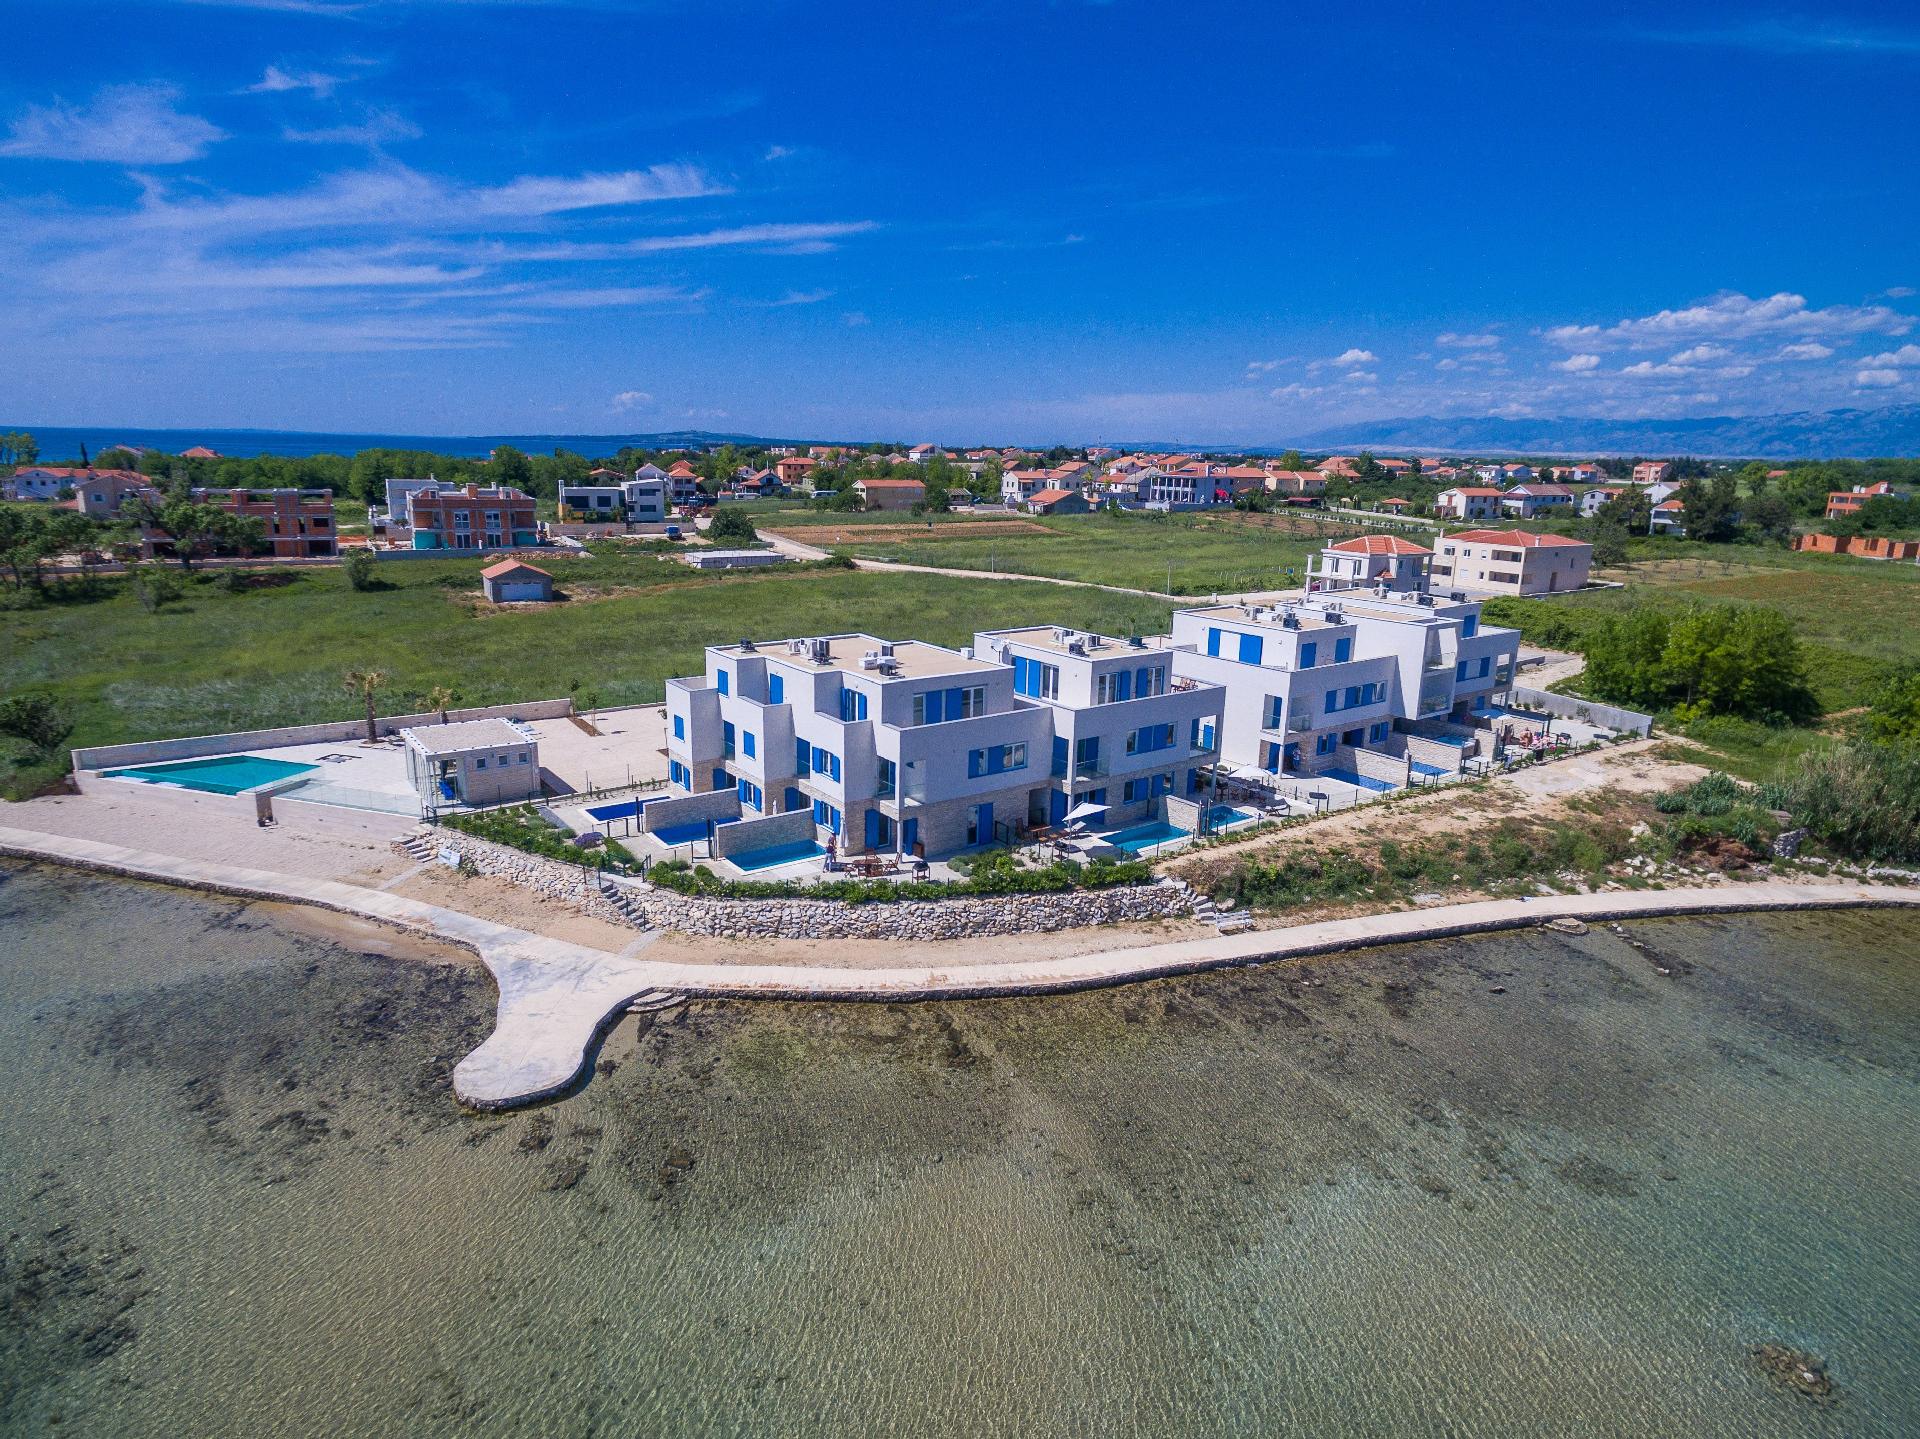 Strandvilla mit beheizbarem Pool und Meerblick, nu Ferienhaus in Kroatien